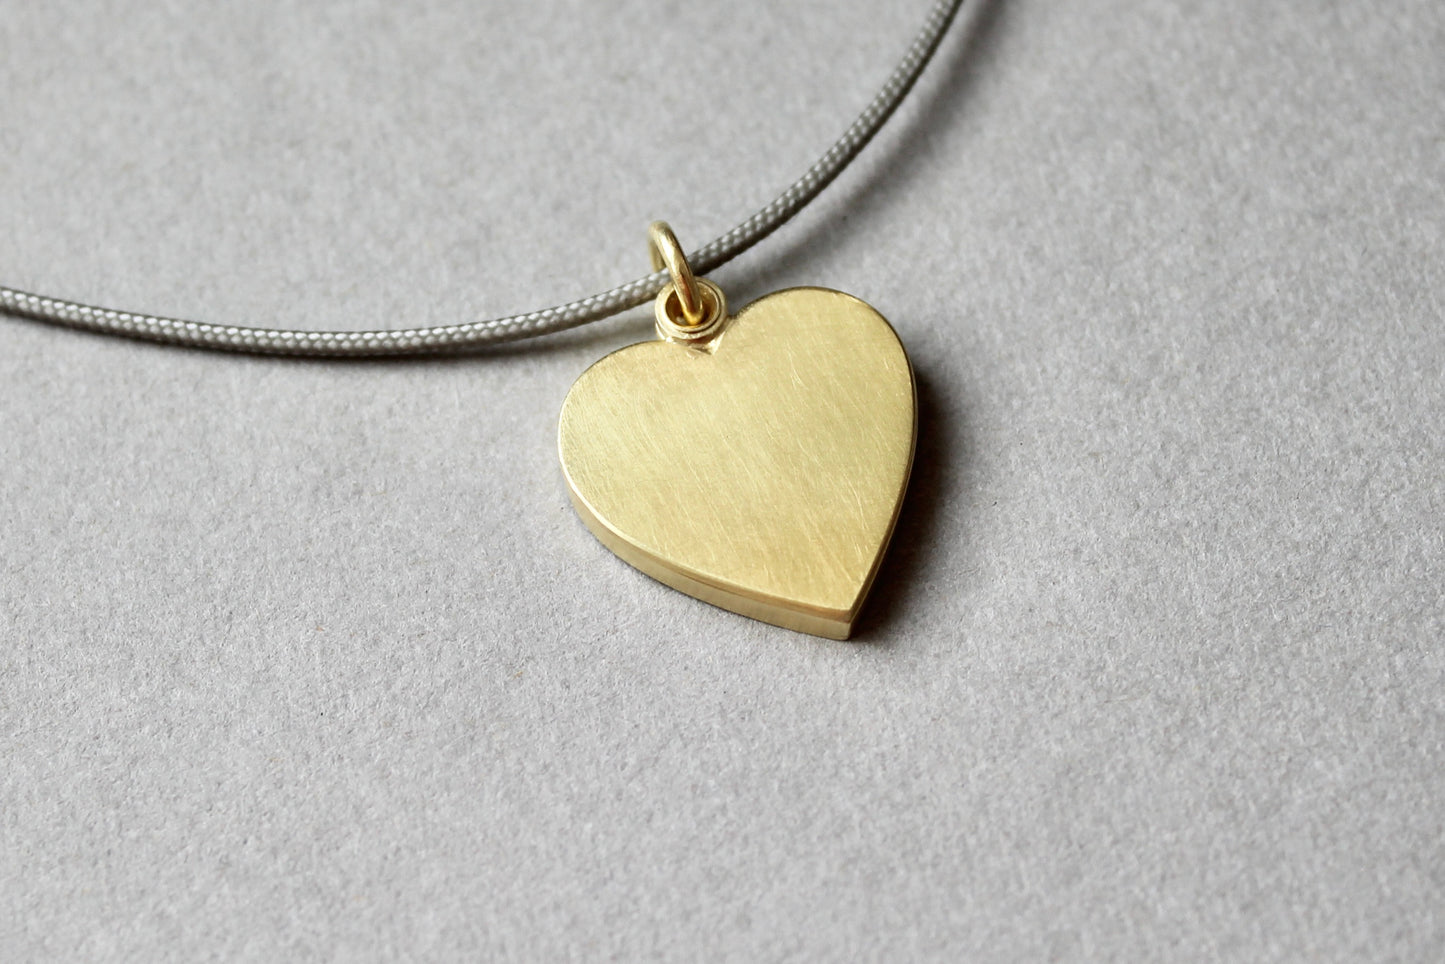 romantisches Herzmedaillon für ein Foto aus 750/000 Gold